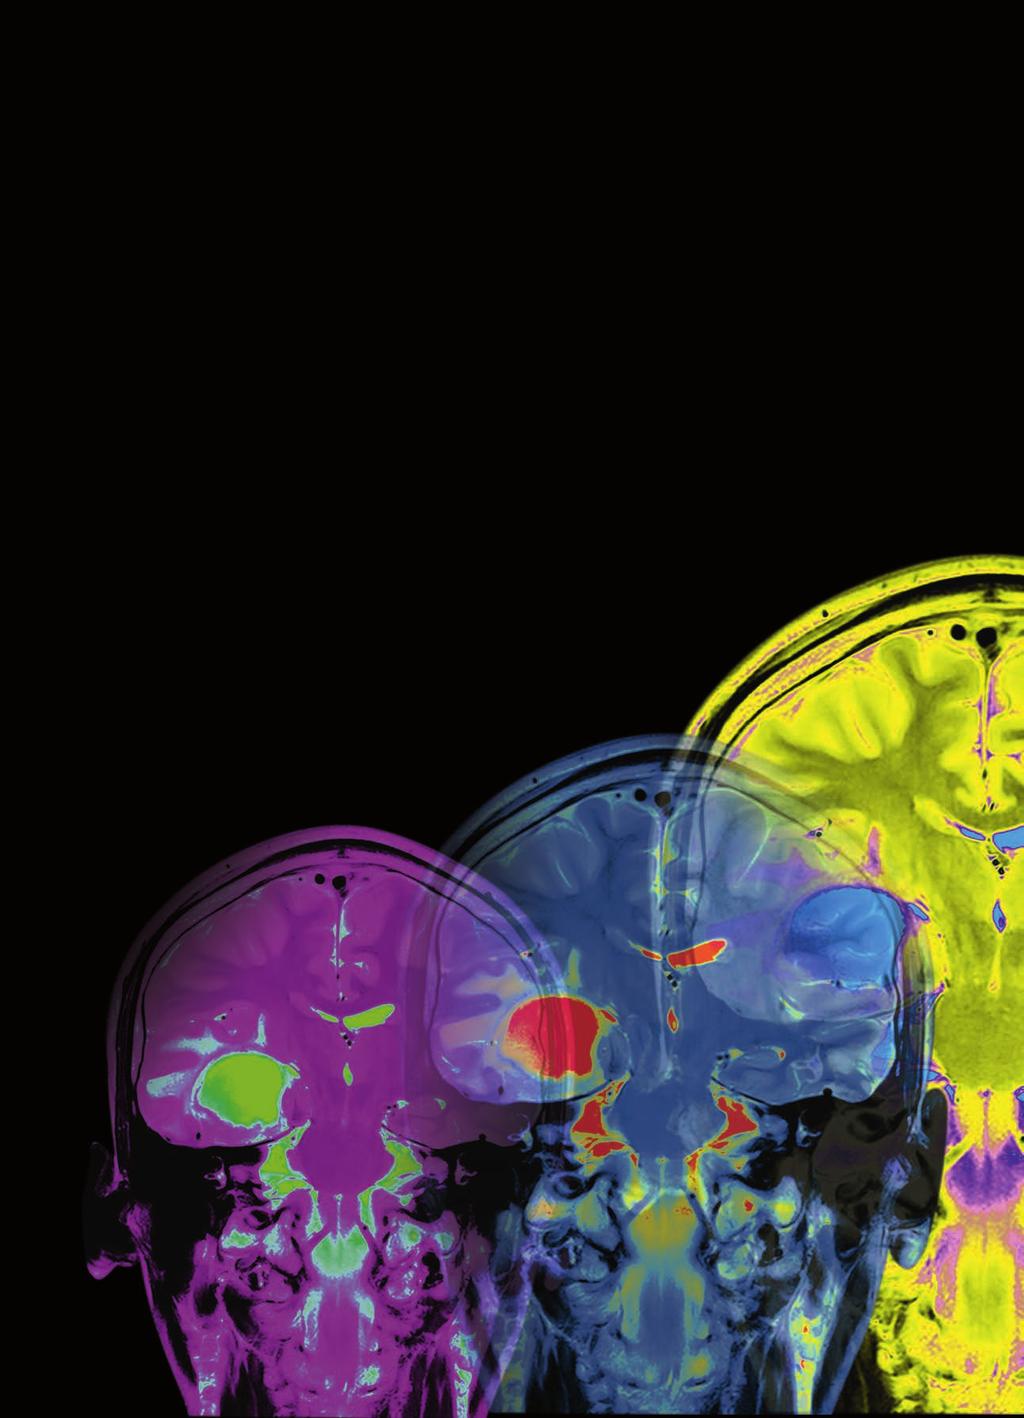 Referat Trauma Bättre prognostisering av patienter nya DT-klassificeringssystem Datortomografi av skallen är något alla patienter med traumatisk hjärnskada genomgår om man misstänker en hjärnblödning.